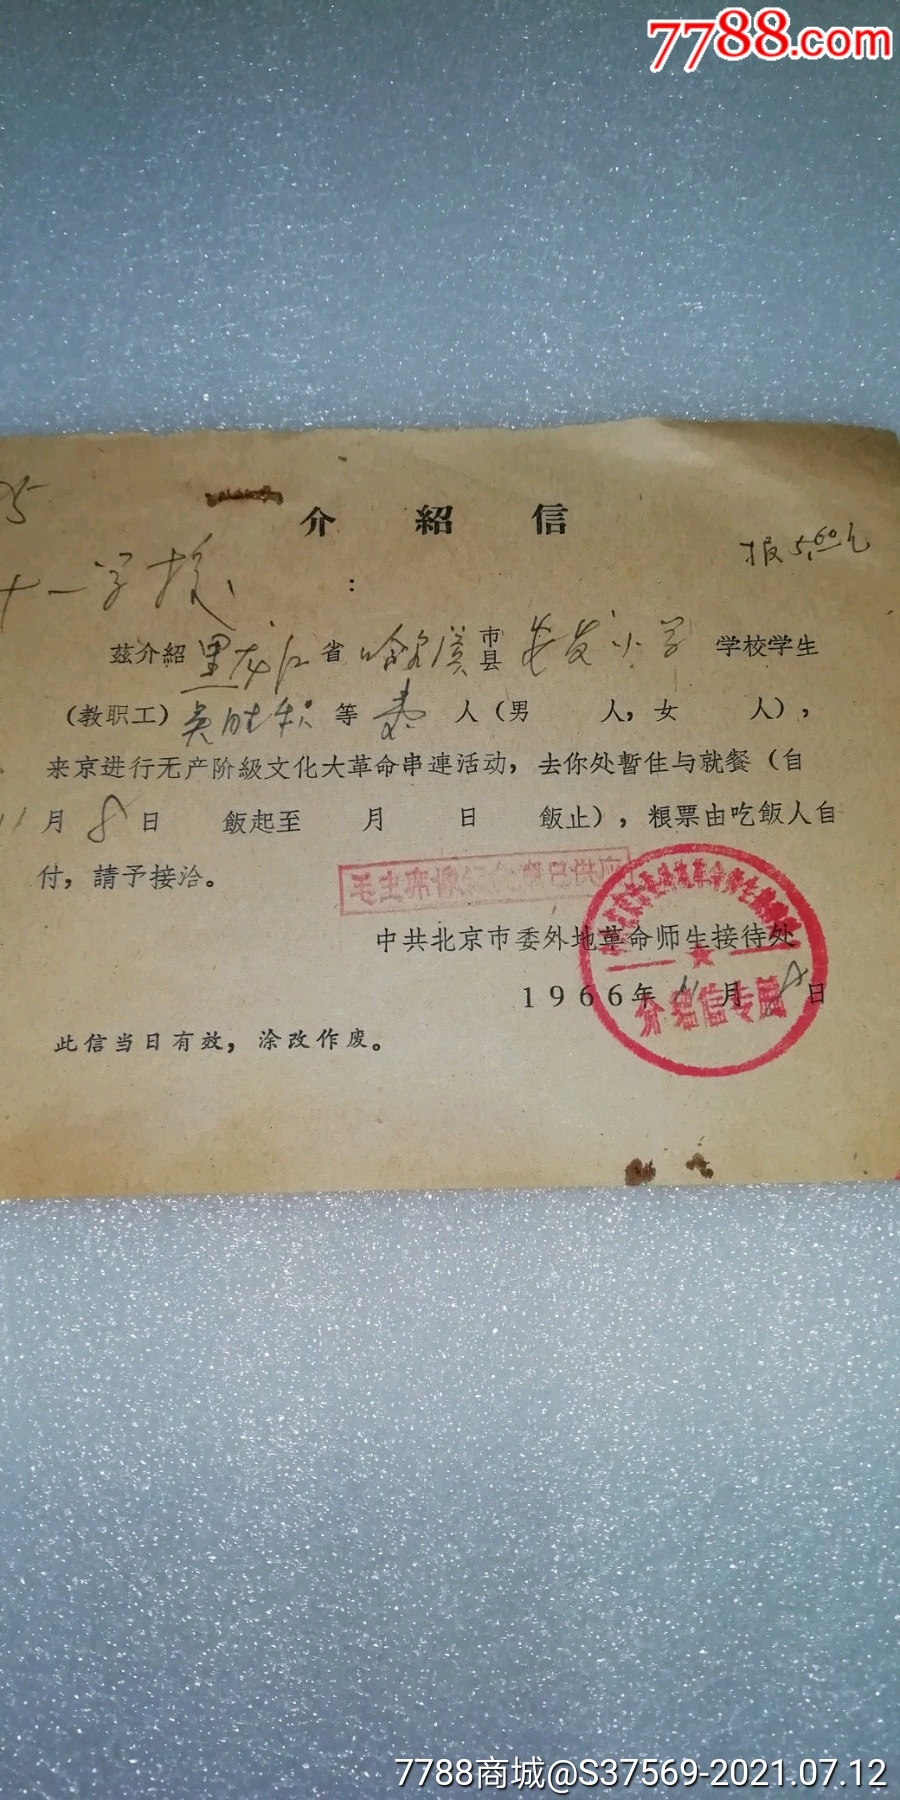 1966年北京市委外地革命师生接待处黑龙江省哈尔滨市安发小学介绍信